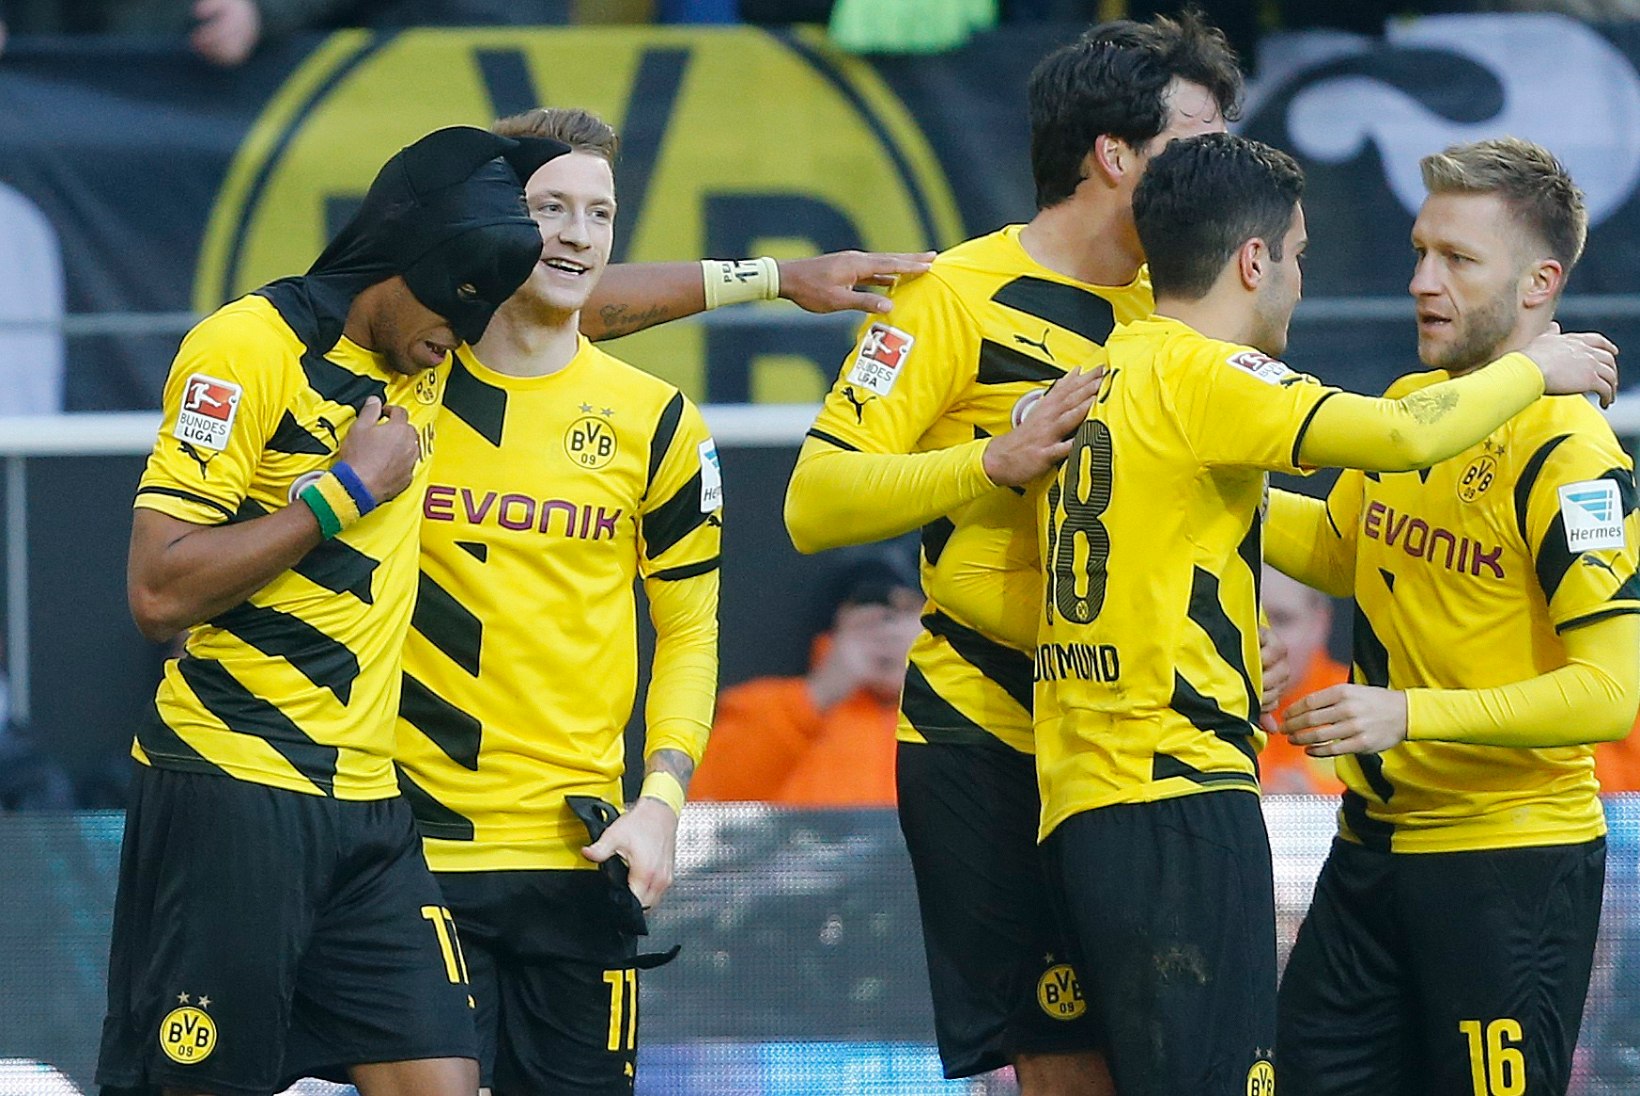 GALERII: Dortmundi Borussia ei saanud algul vedama, nüüd ei saa üldse pidama!